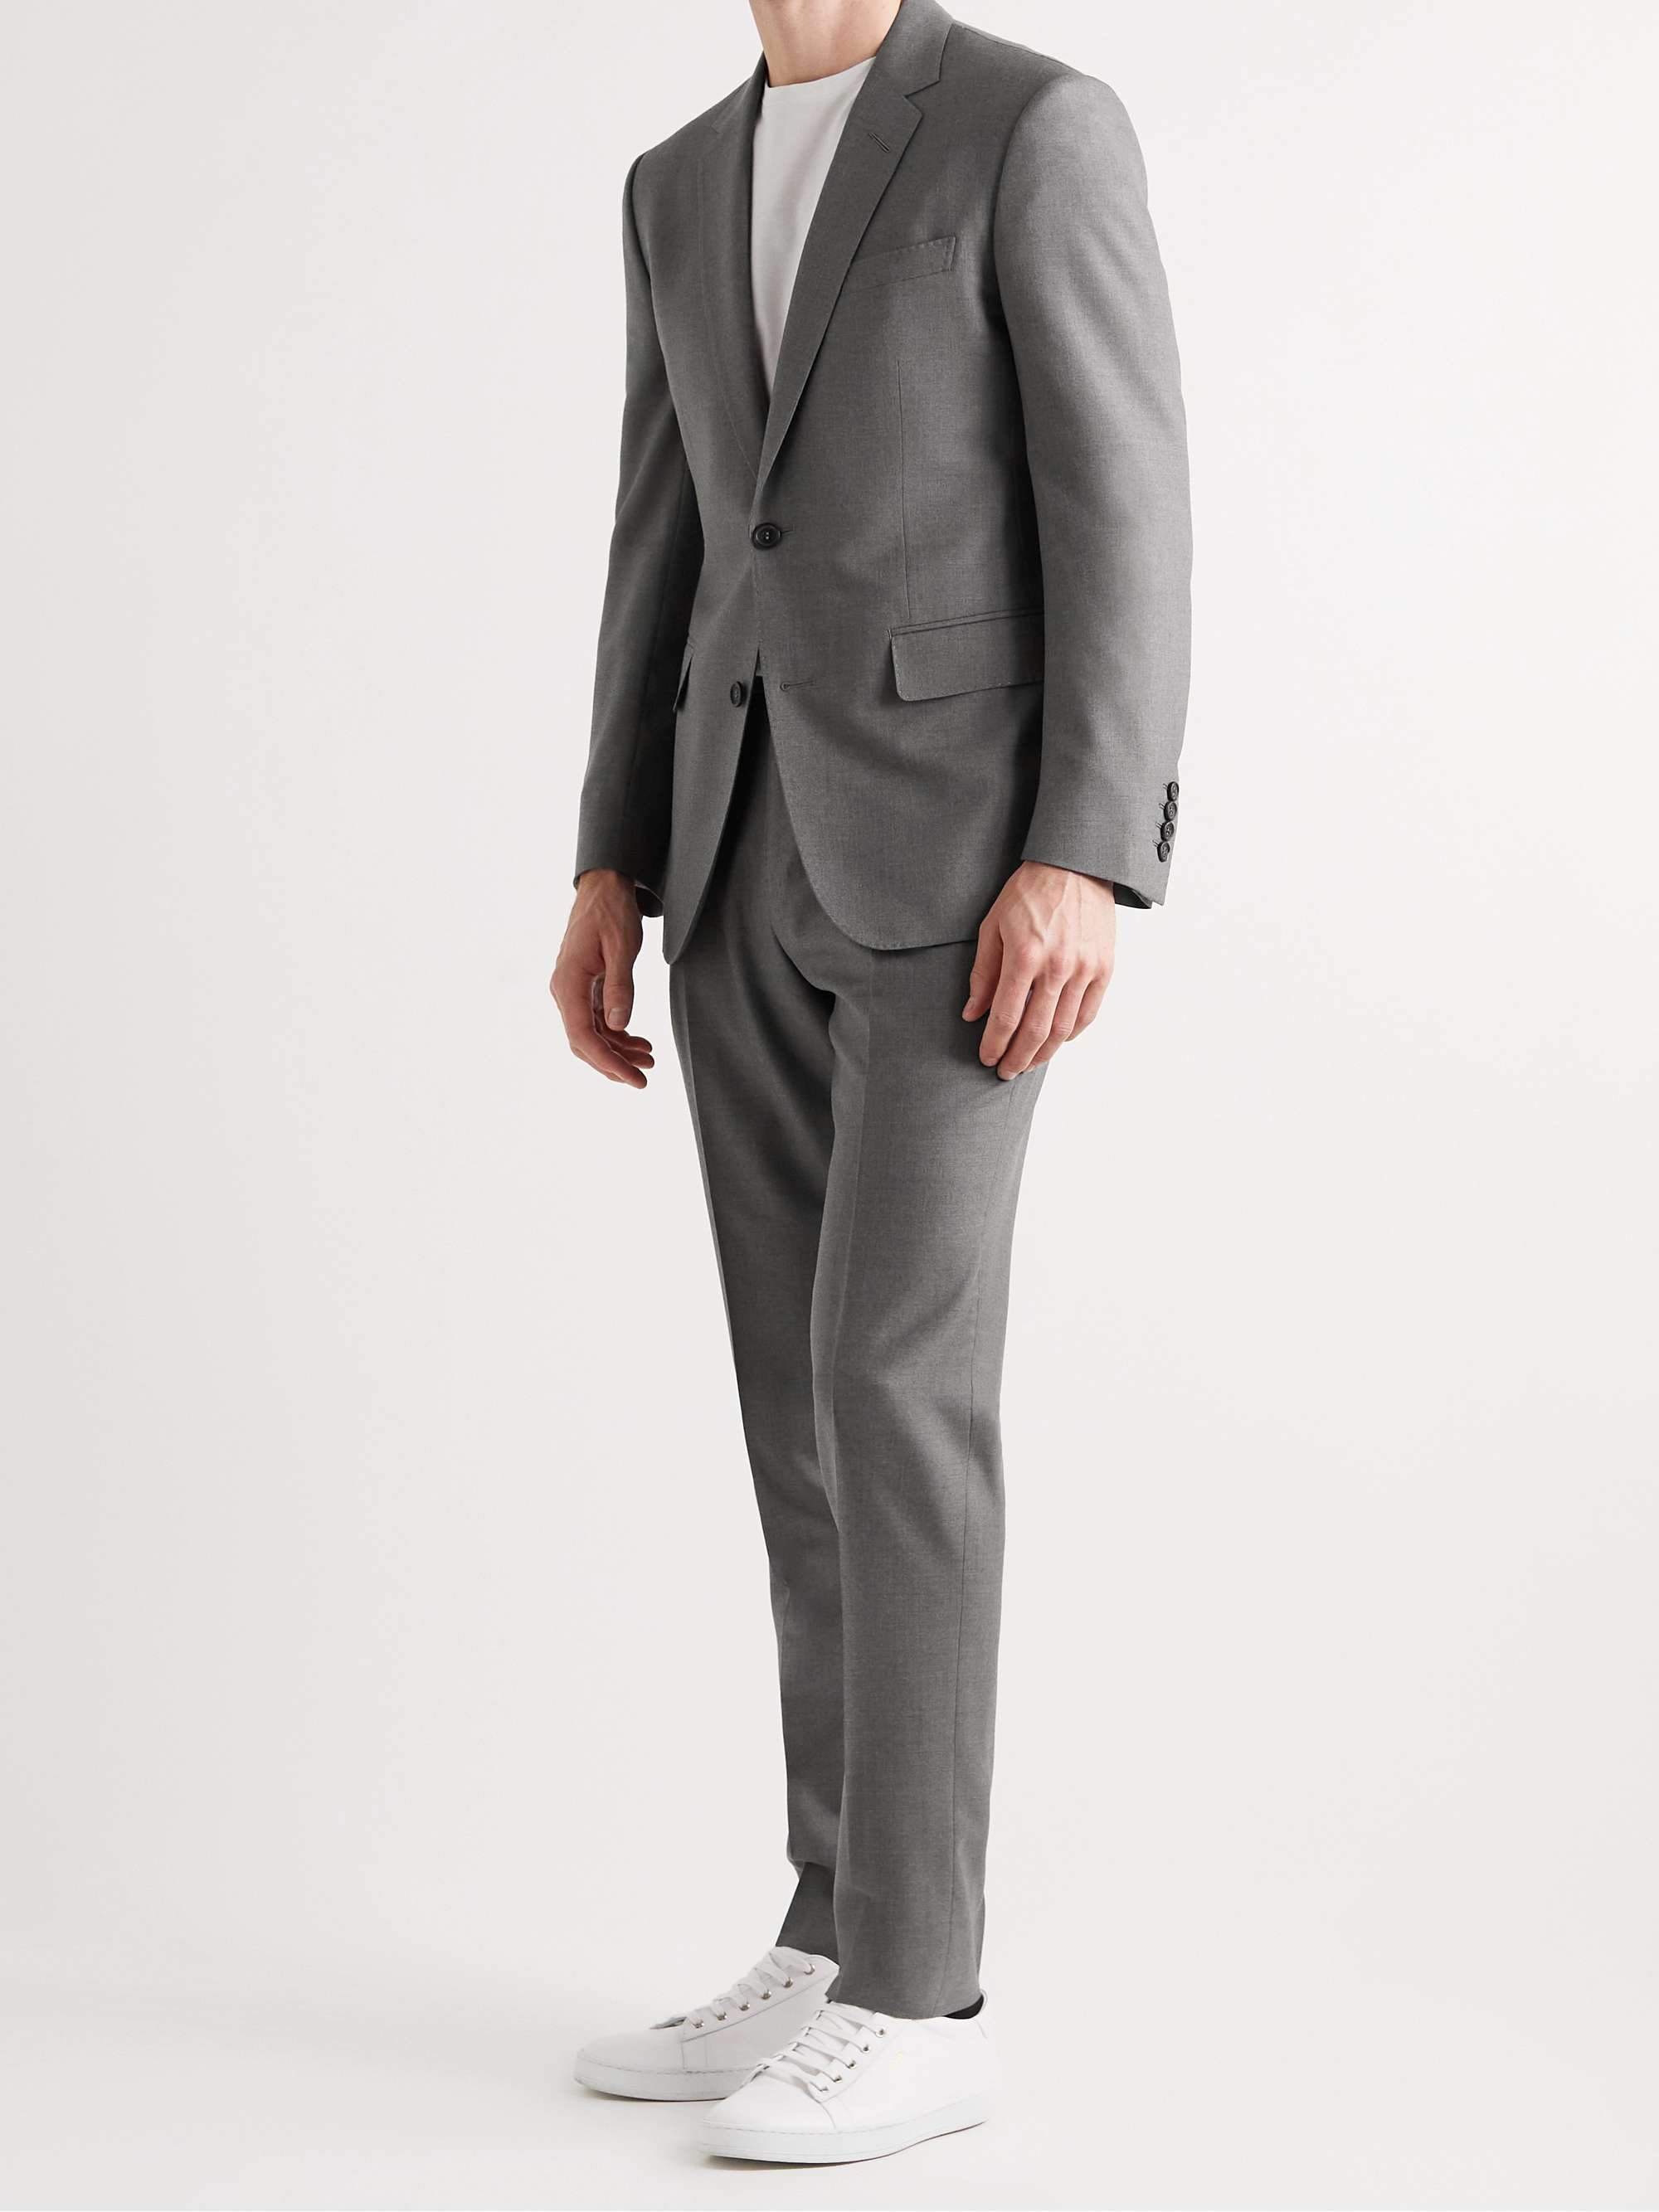 DUNHILL Mayfair Slim-Fit Super 150s Wool Suit Jacket for Men | MR PORTER